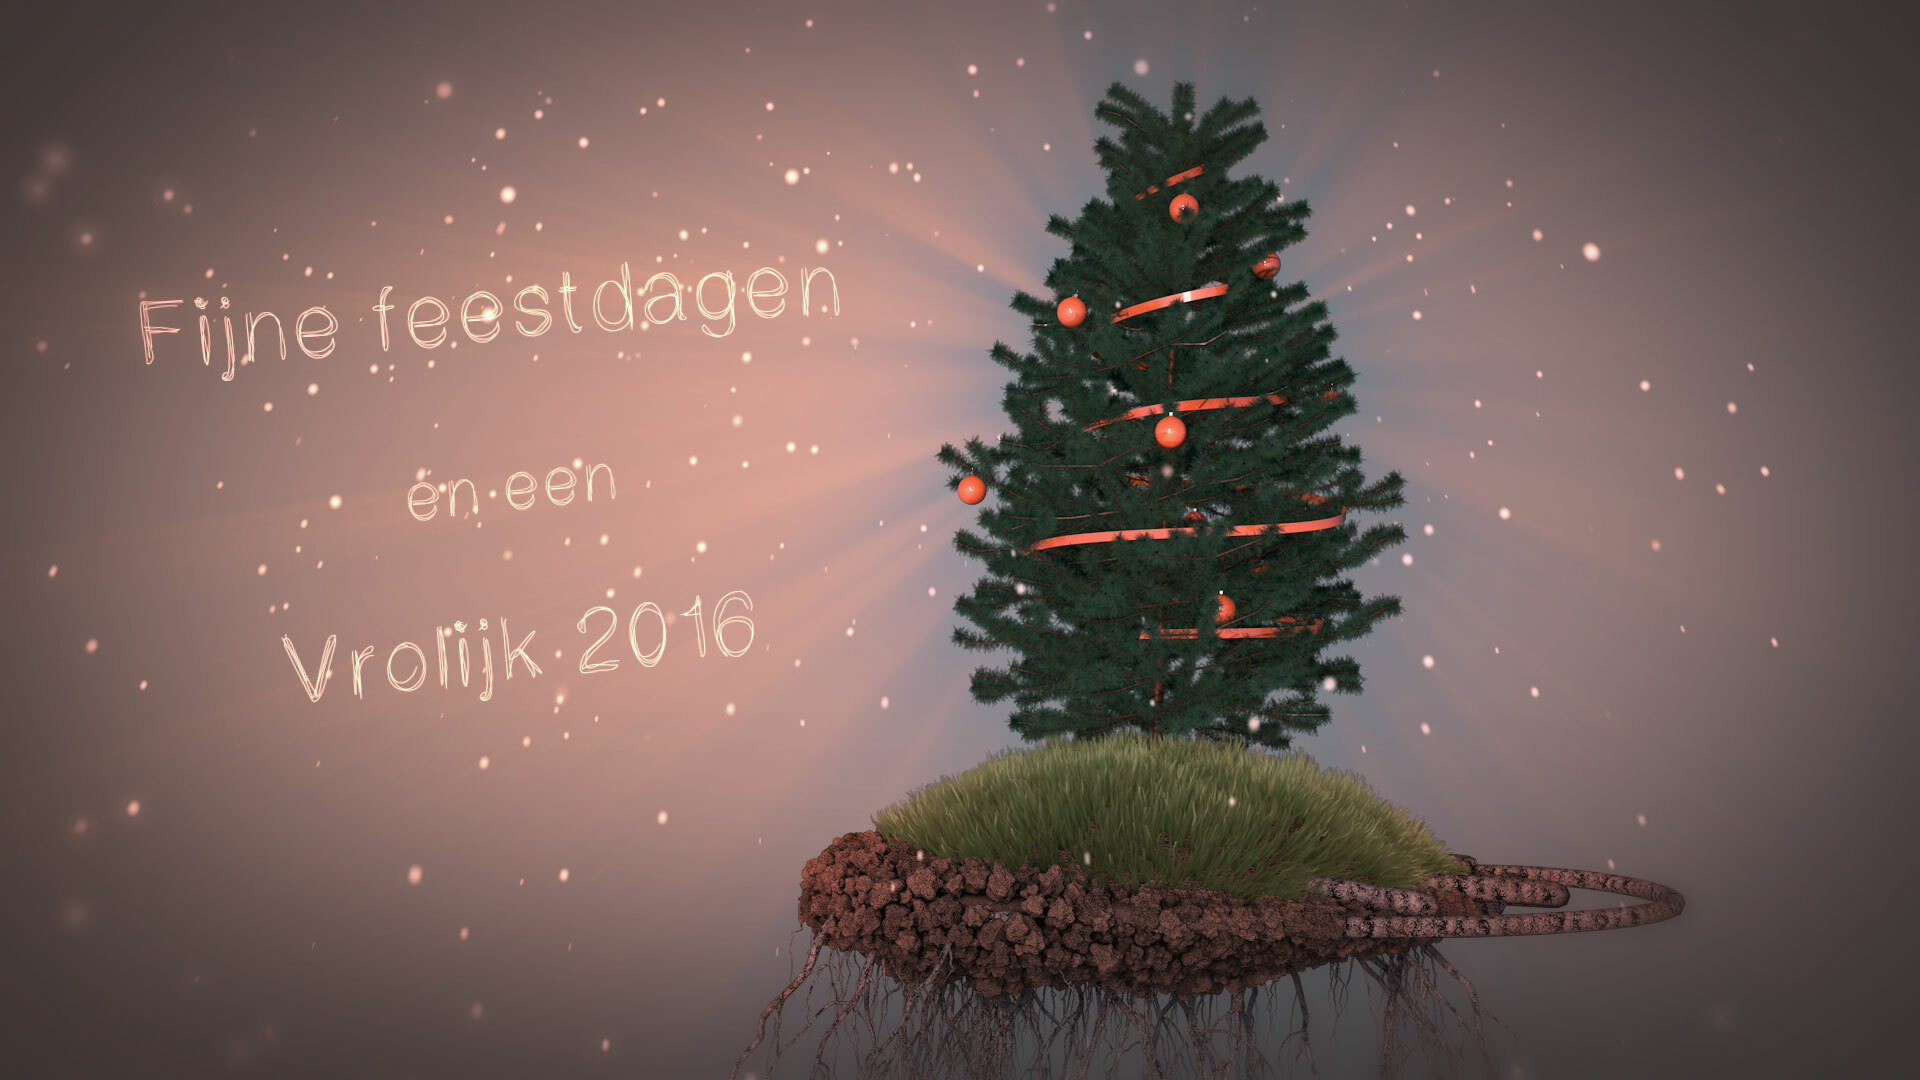 Foxmountain Christmascard 2015